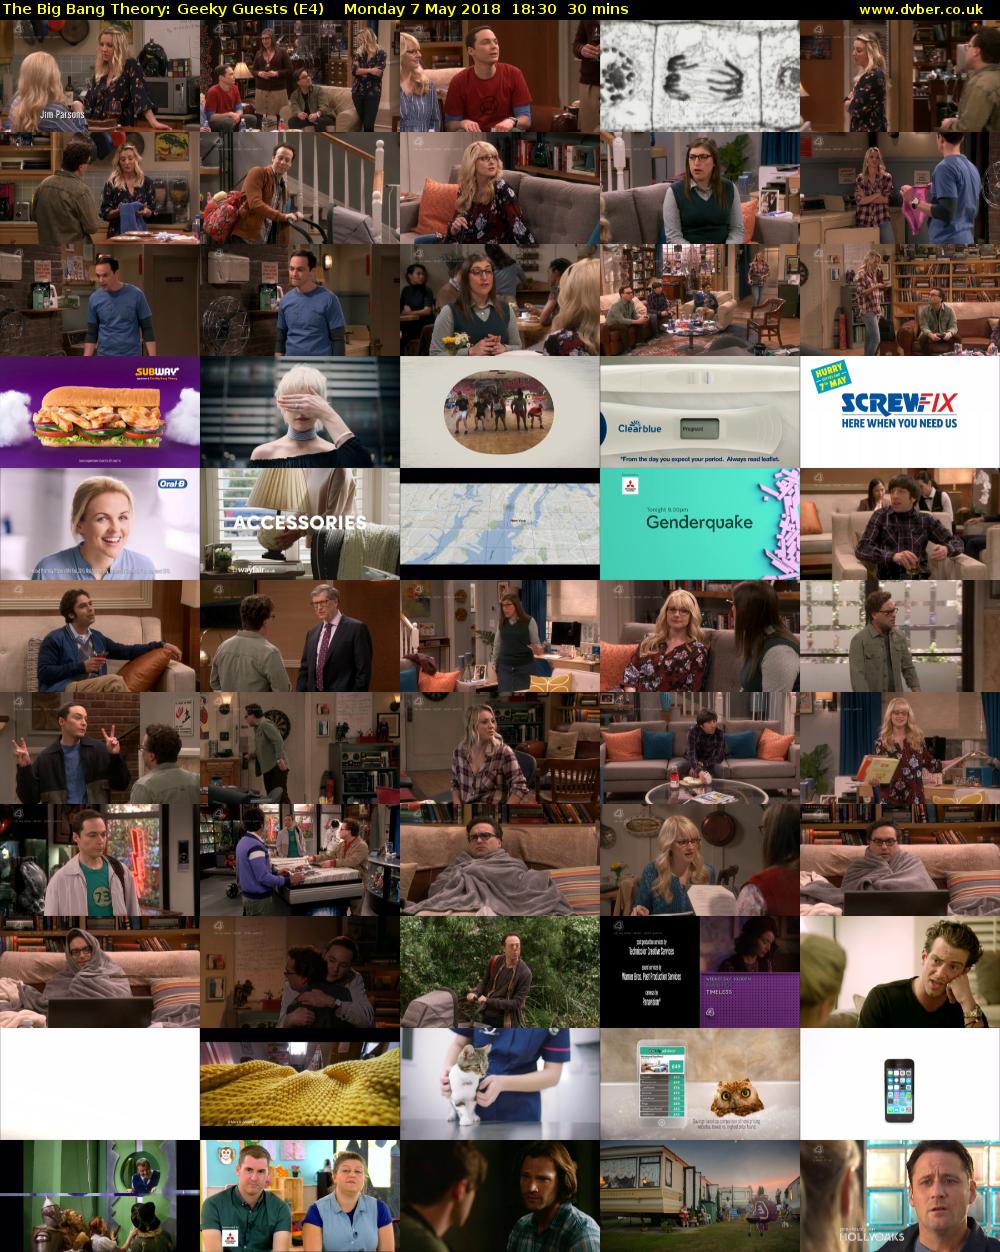 The Big Bang Theory: Geeky Guests (E4) Monday 7 May 2018 18:30 - 19:00